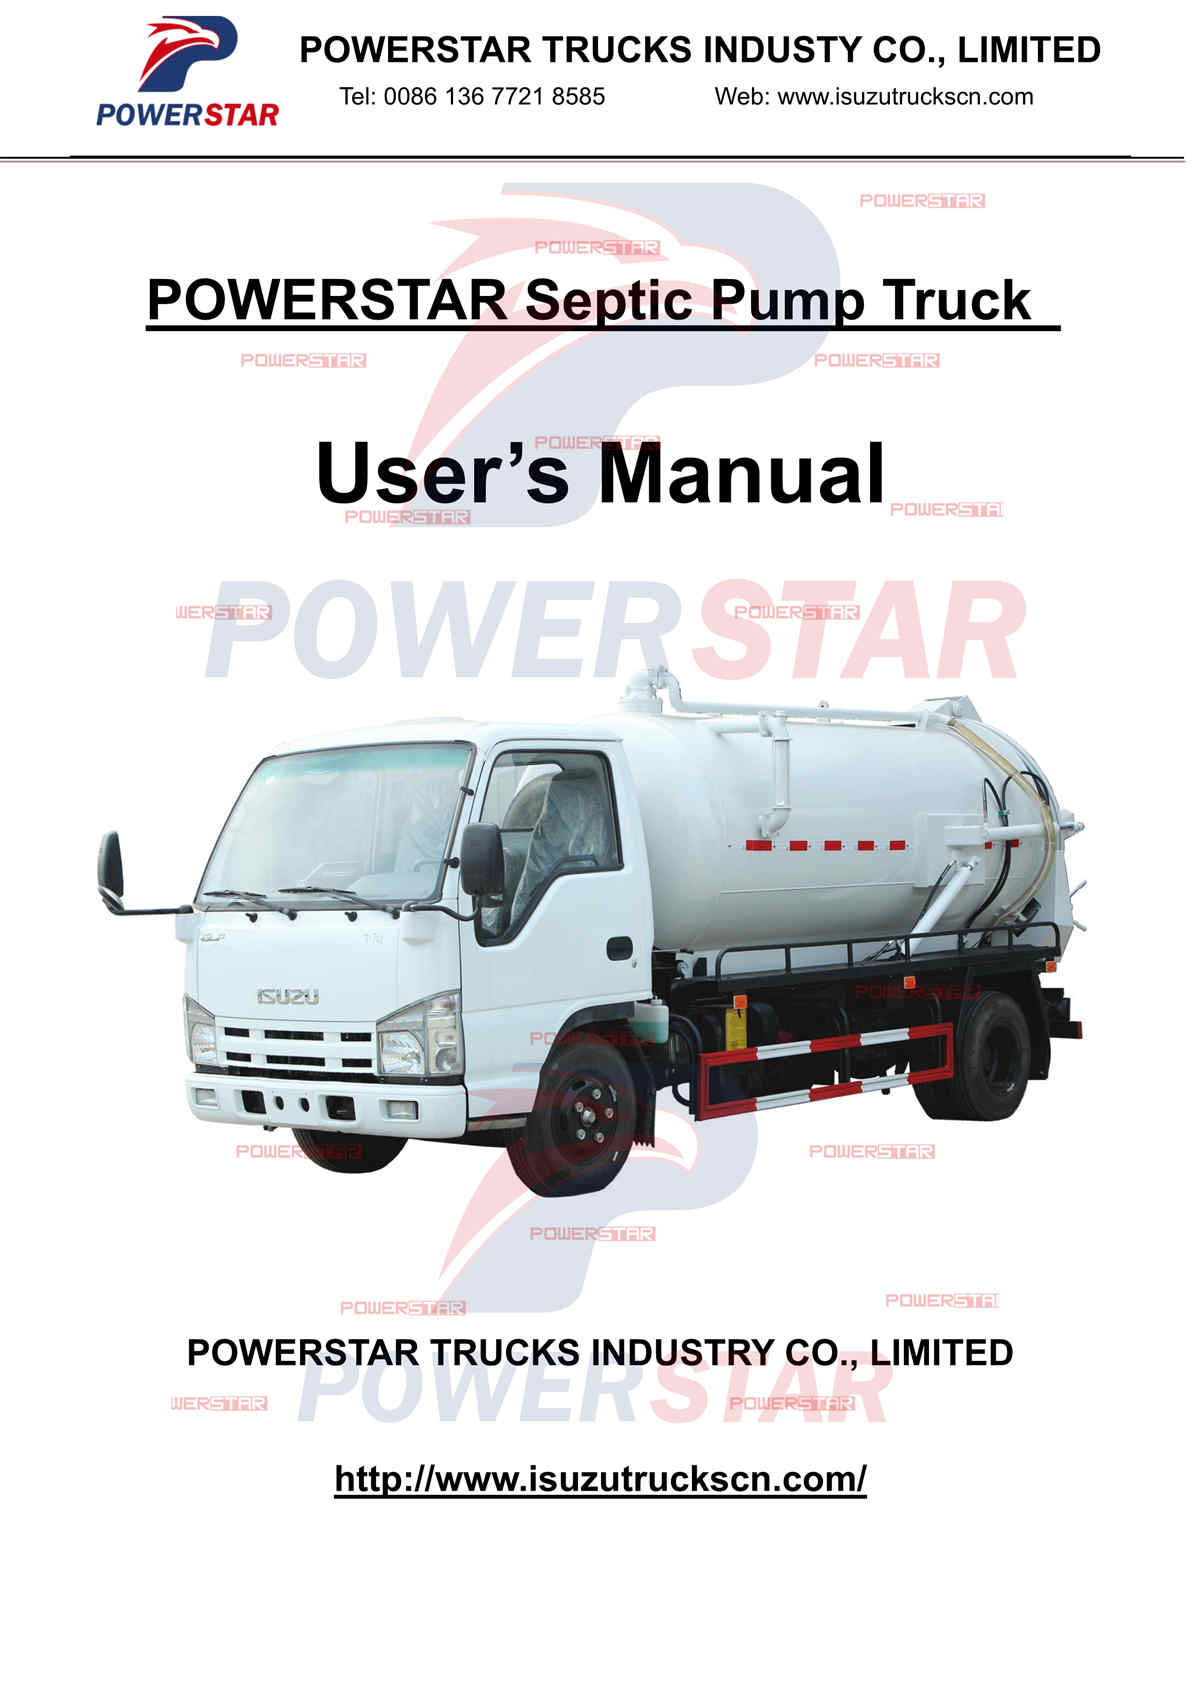 ISUZU mini 100P vacuum tanker truck export to Cambodia operation manual